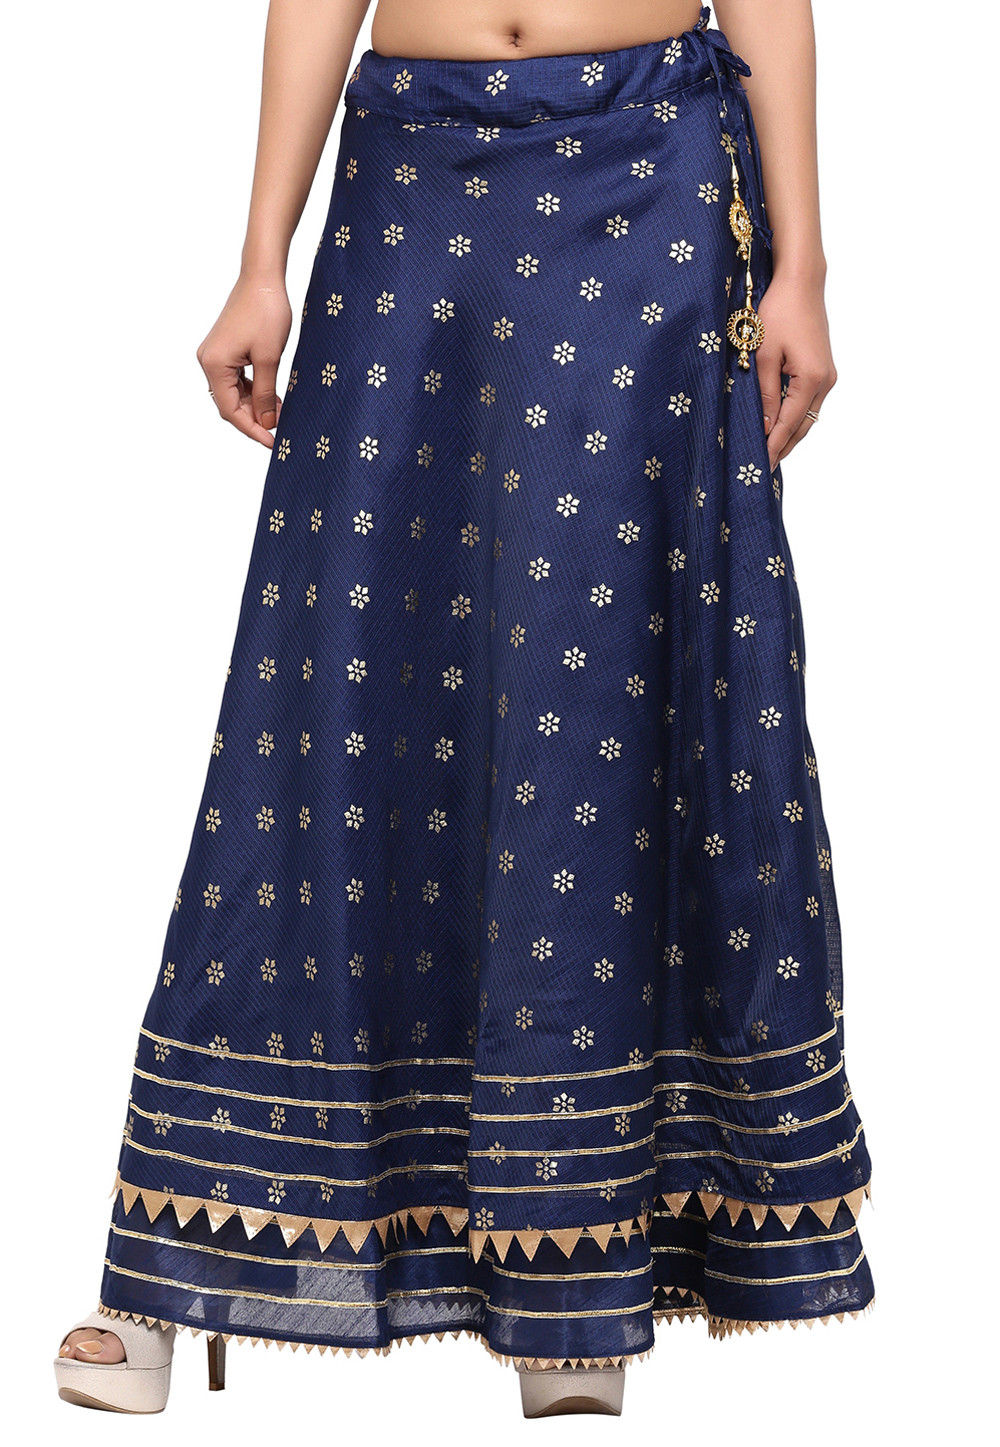 Golden Printed Kota Silk Skirt in Navy Blue : BRJ571